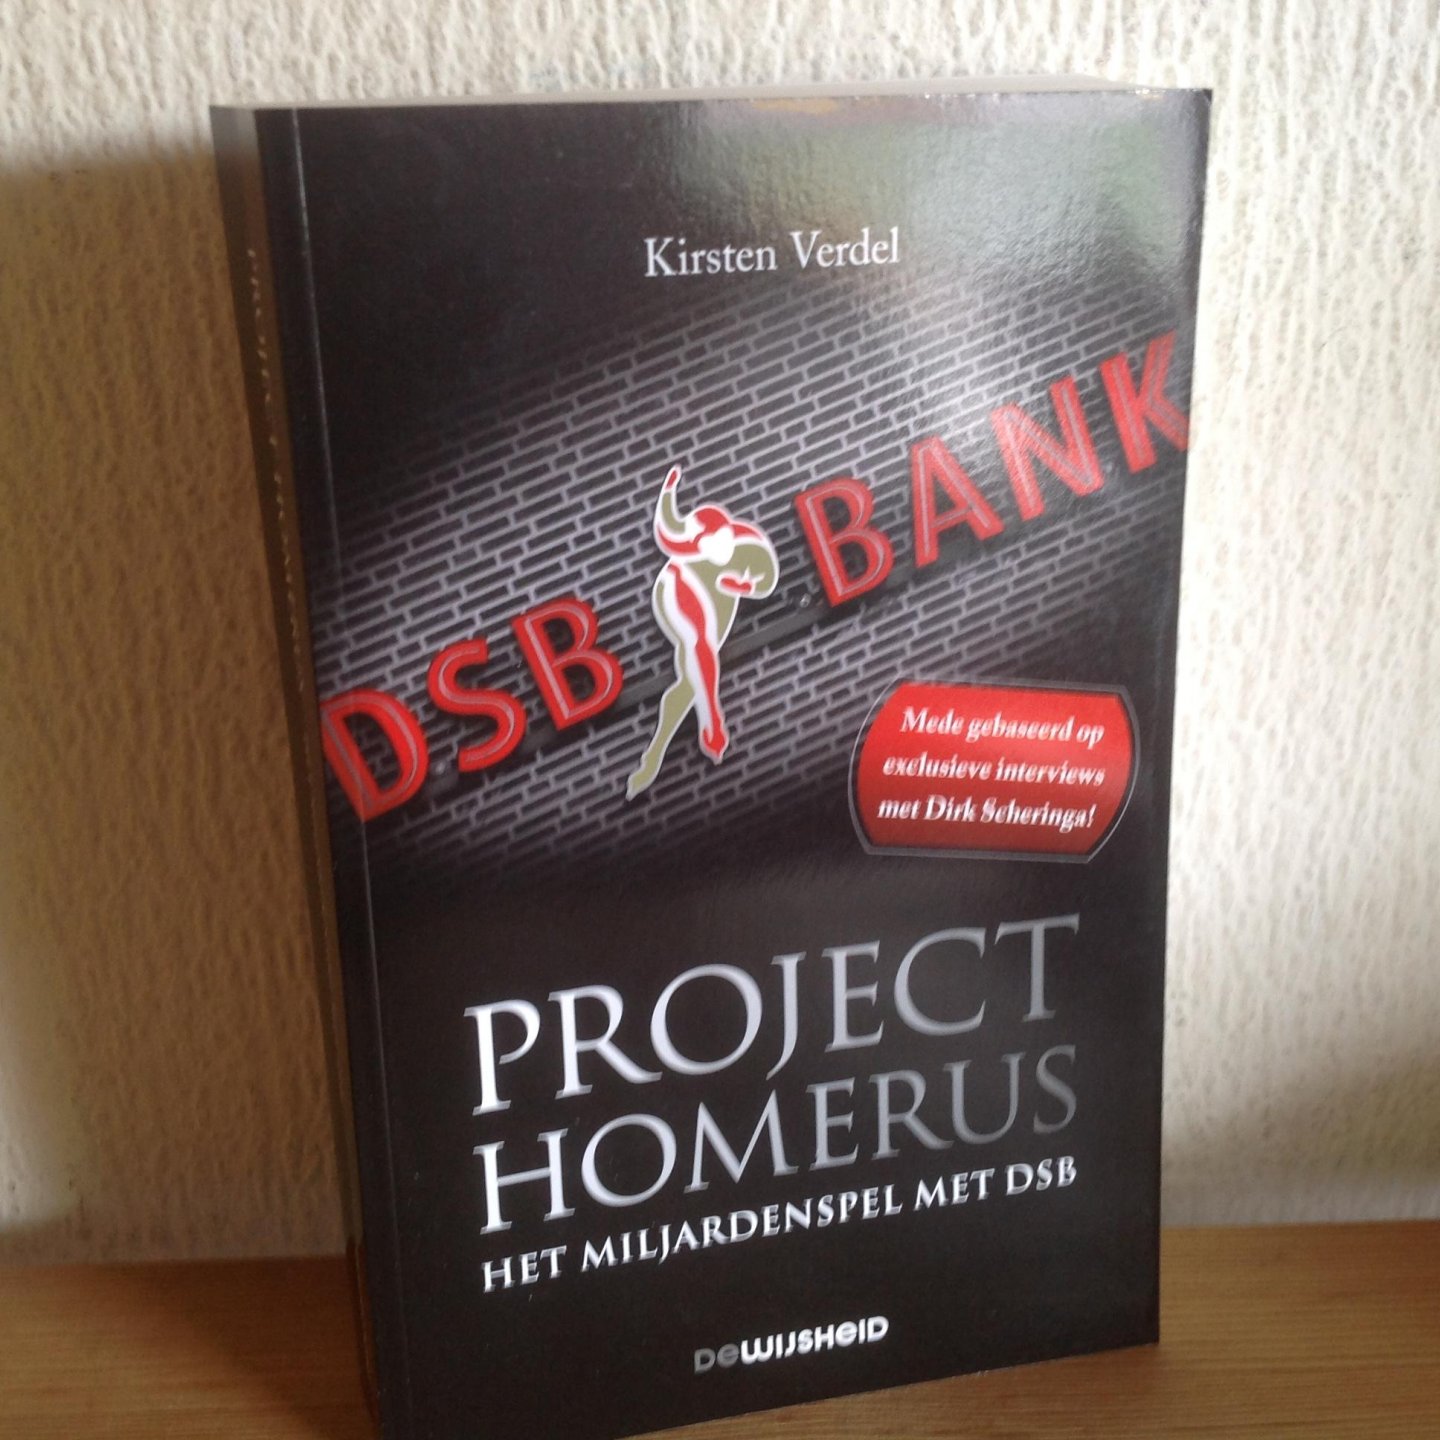 Verdel, Kirsten - Project Homerus / het miljardenspel met DSB